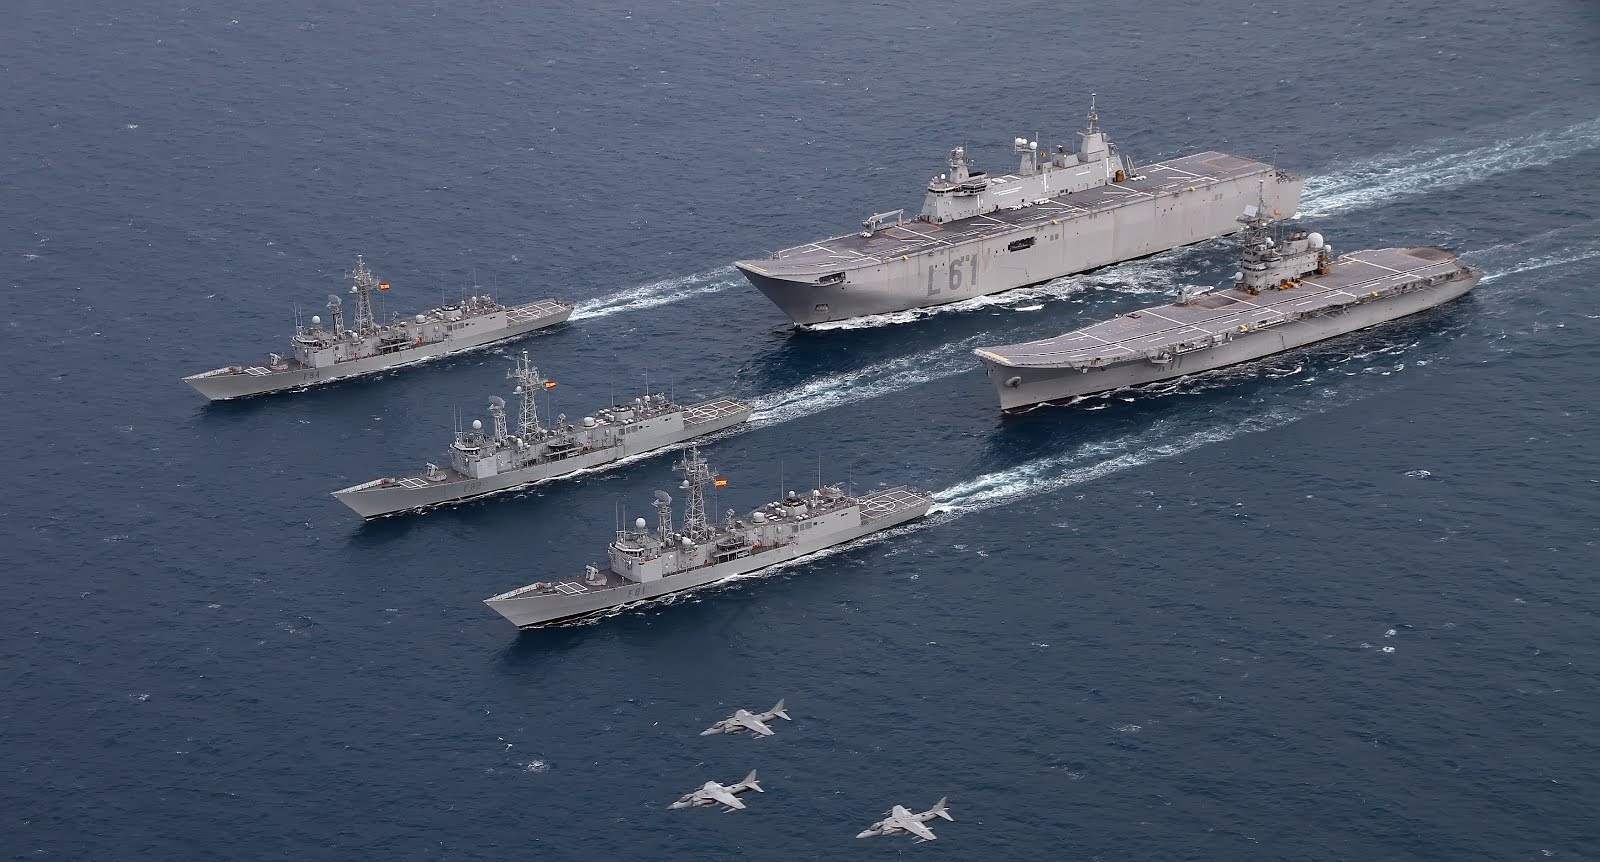 西班牙航母标新立异,融合两栖攻击舰和航母特征,满足作战需求!